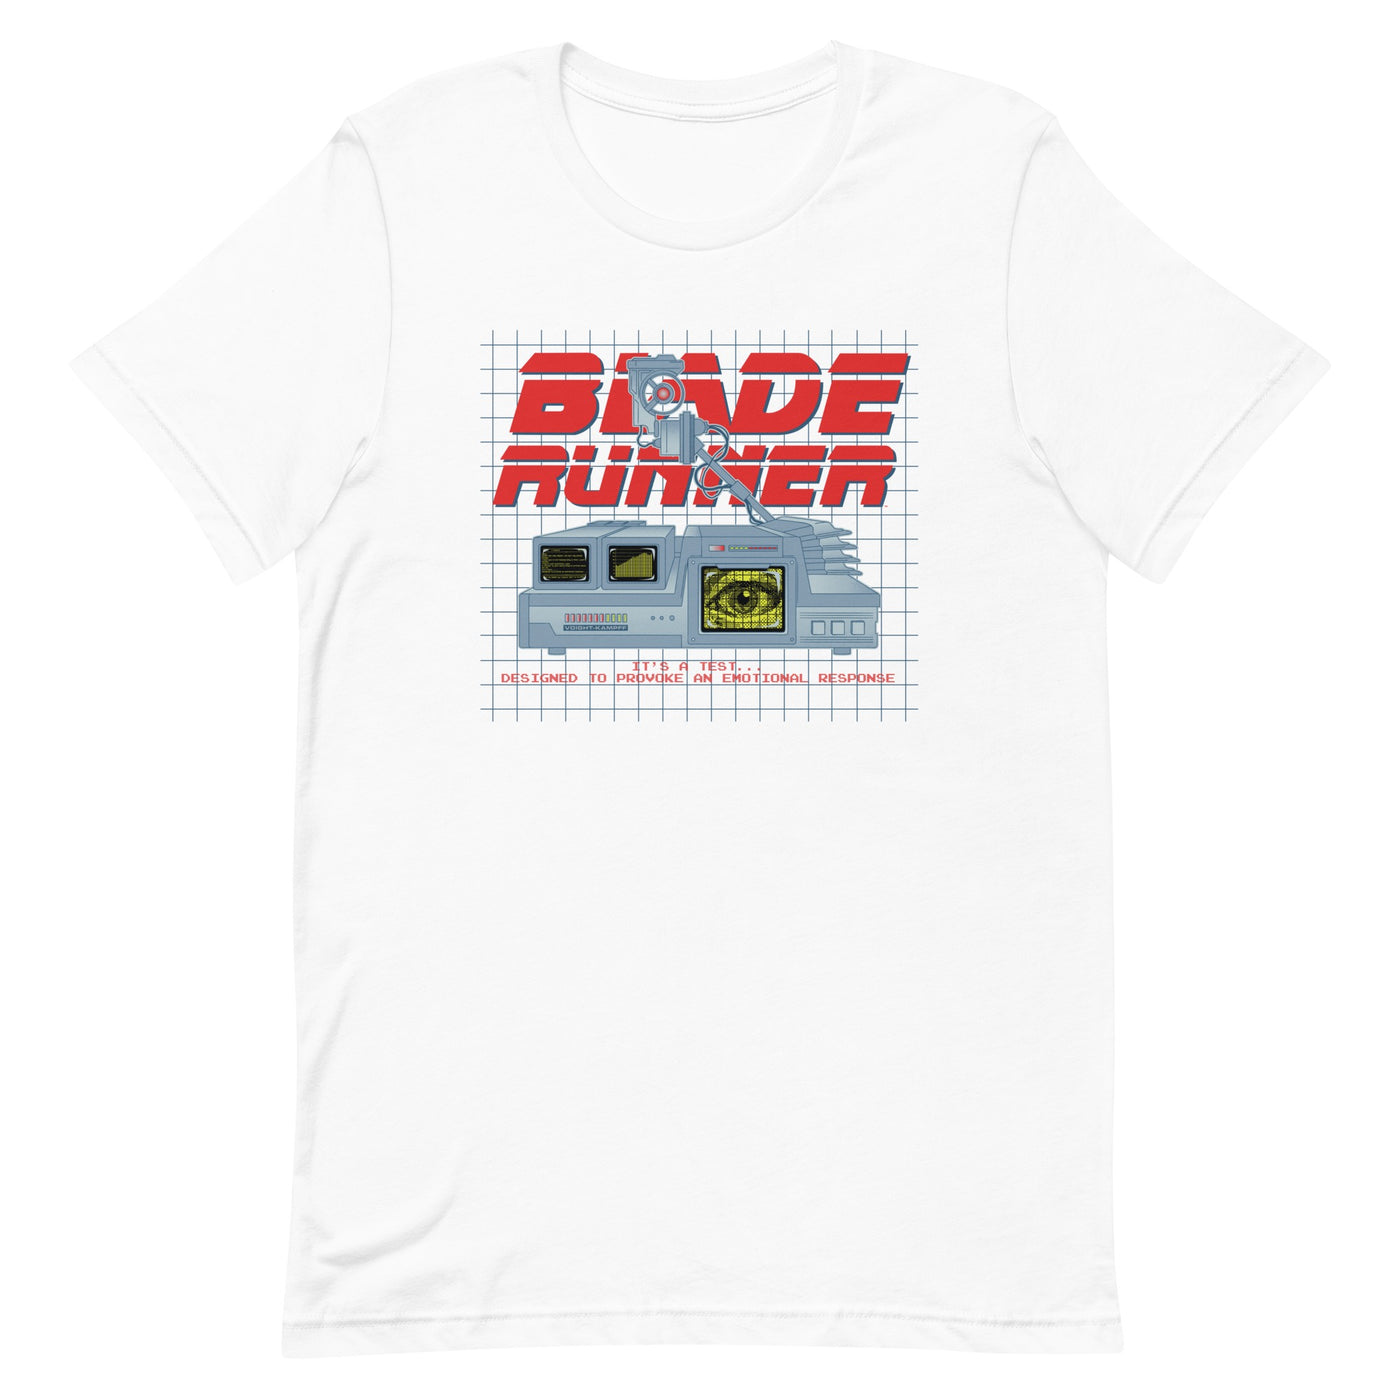 WB 100 Blade Runner Voight-Kampff Adult T-shirt